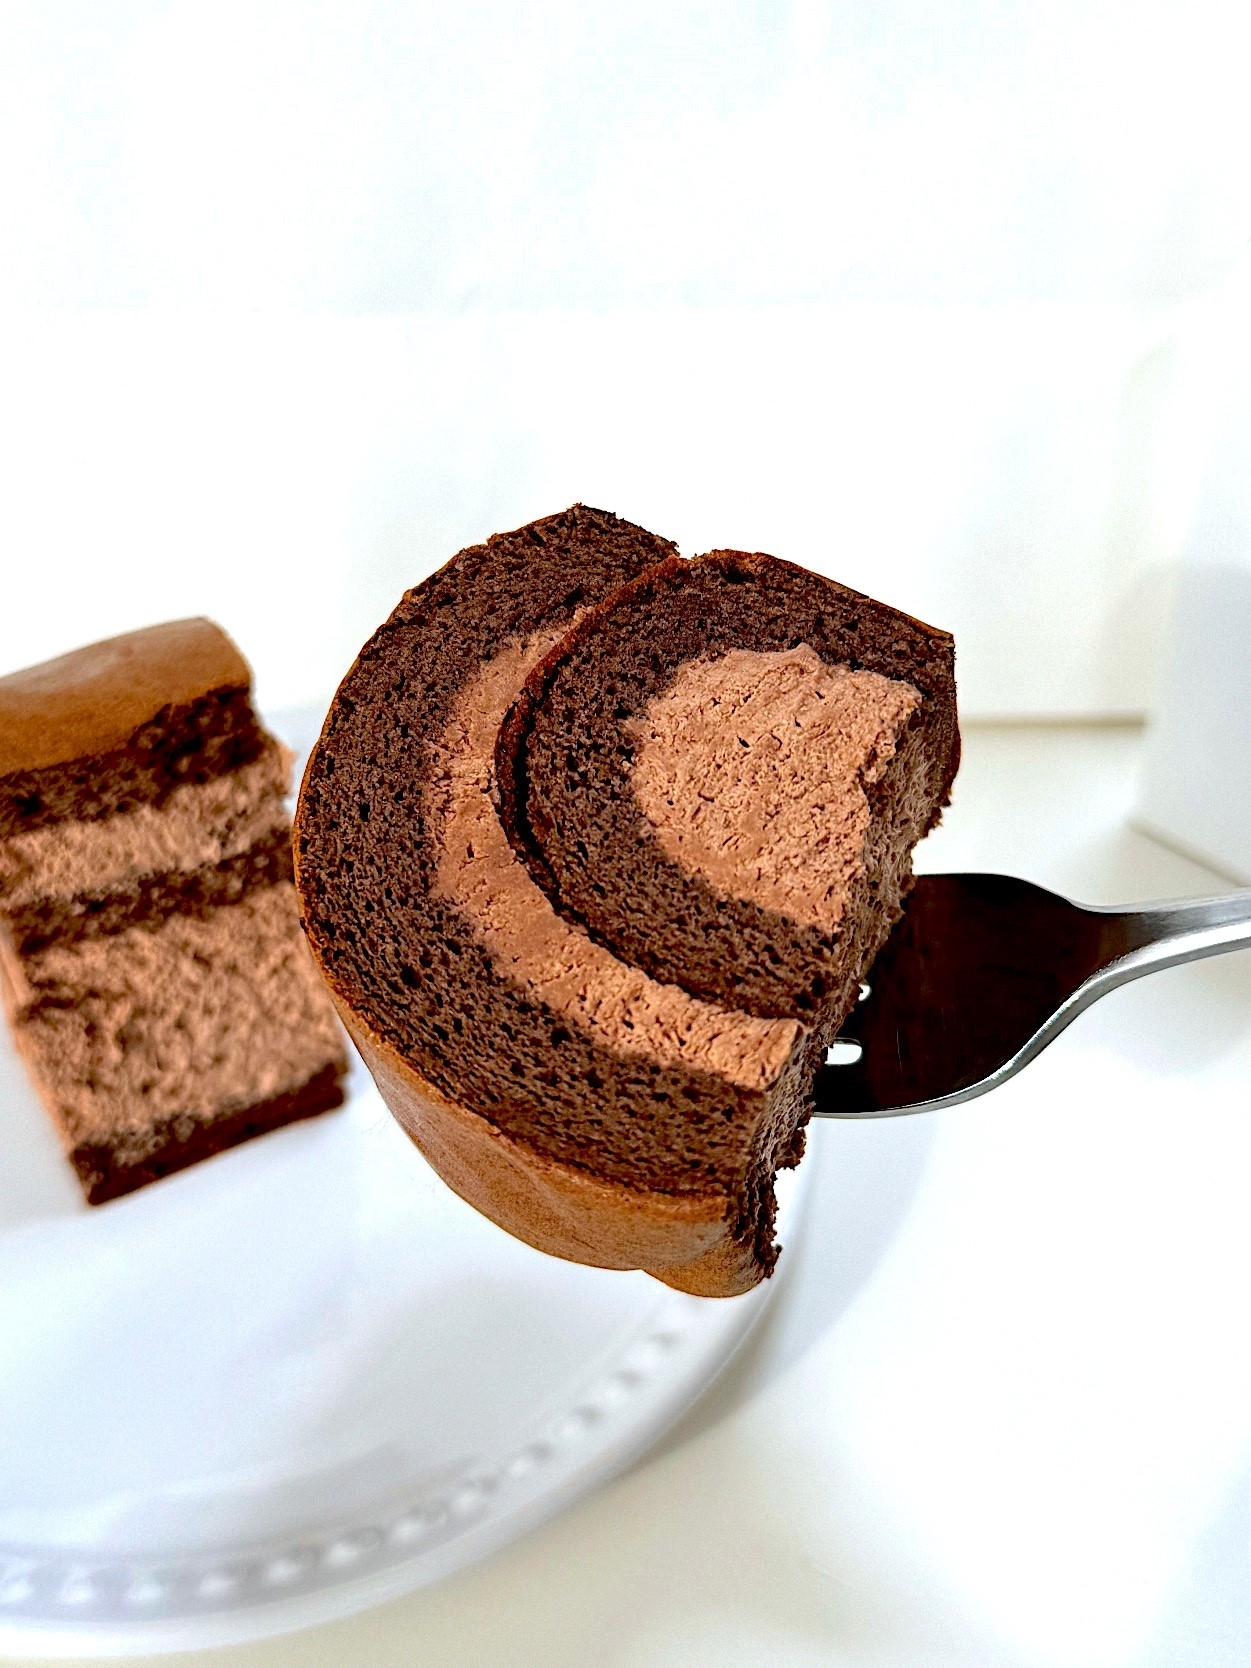 星乃珈琲店のおすすめのメニュー「チョコレートロールケーキ」